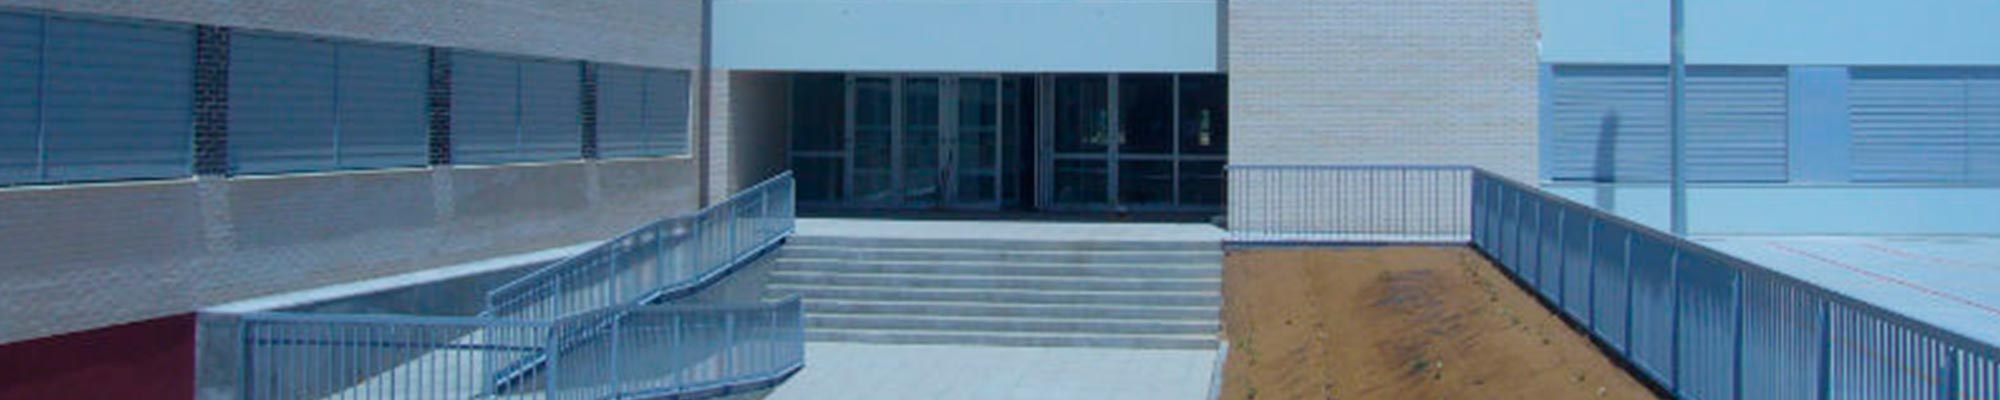 Instituto de Educación Secundaria Parque Goya II